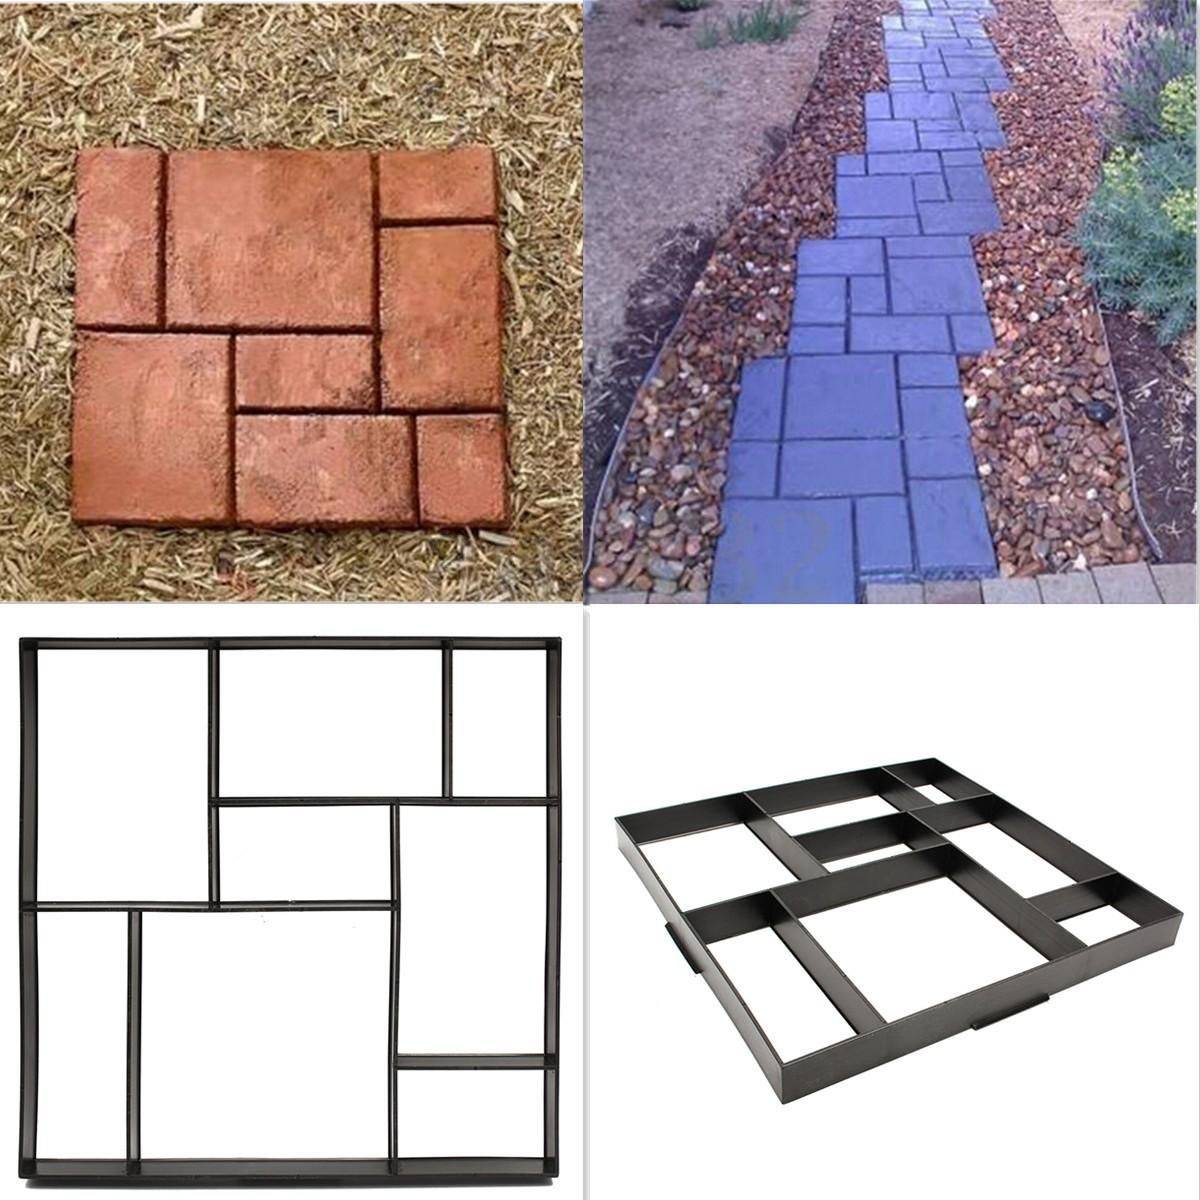 Тротуарная плитка. виды и технология изготовления тротуарной плитки.